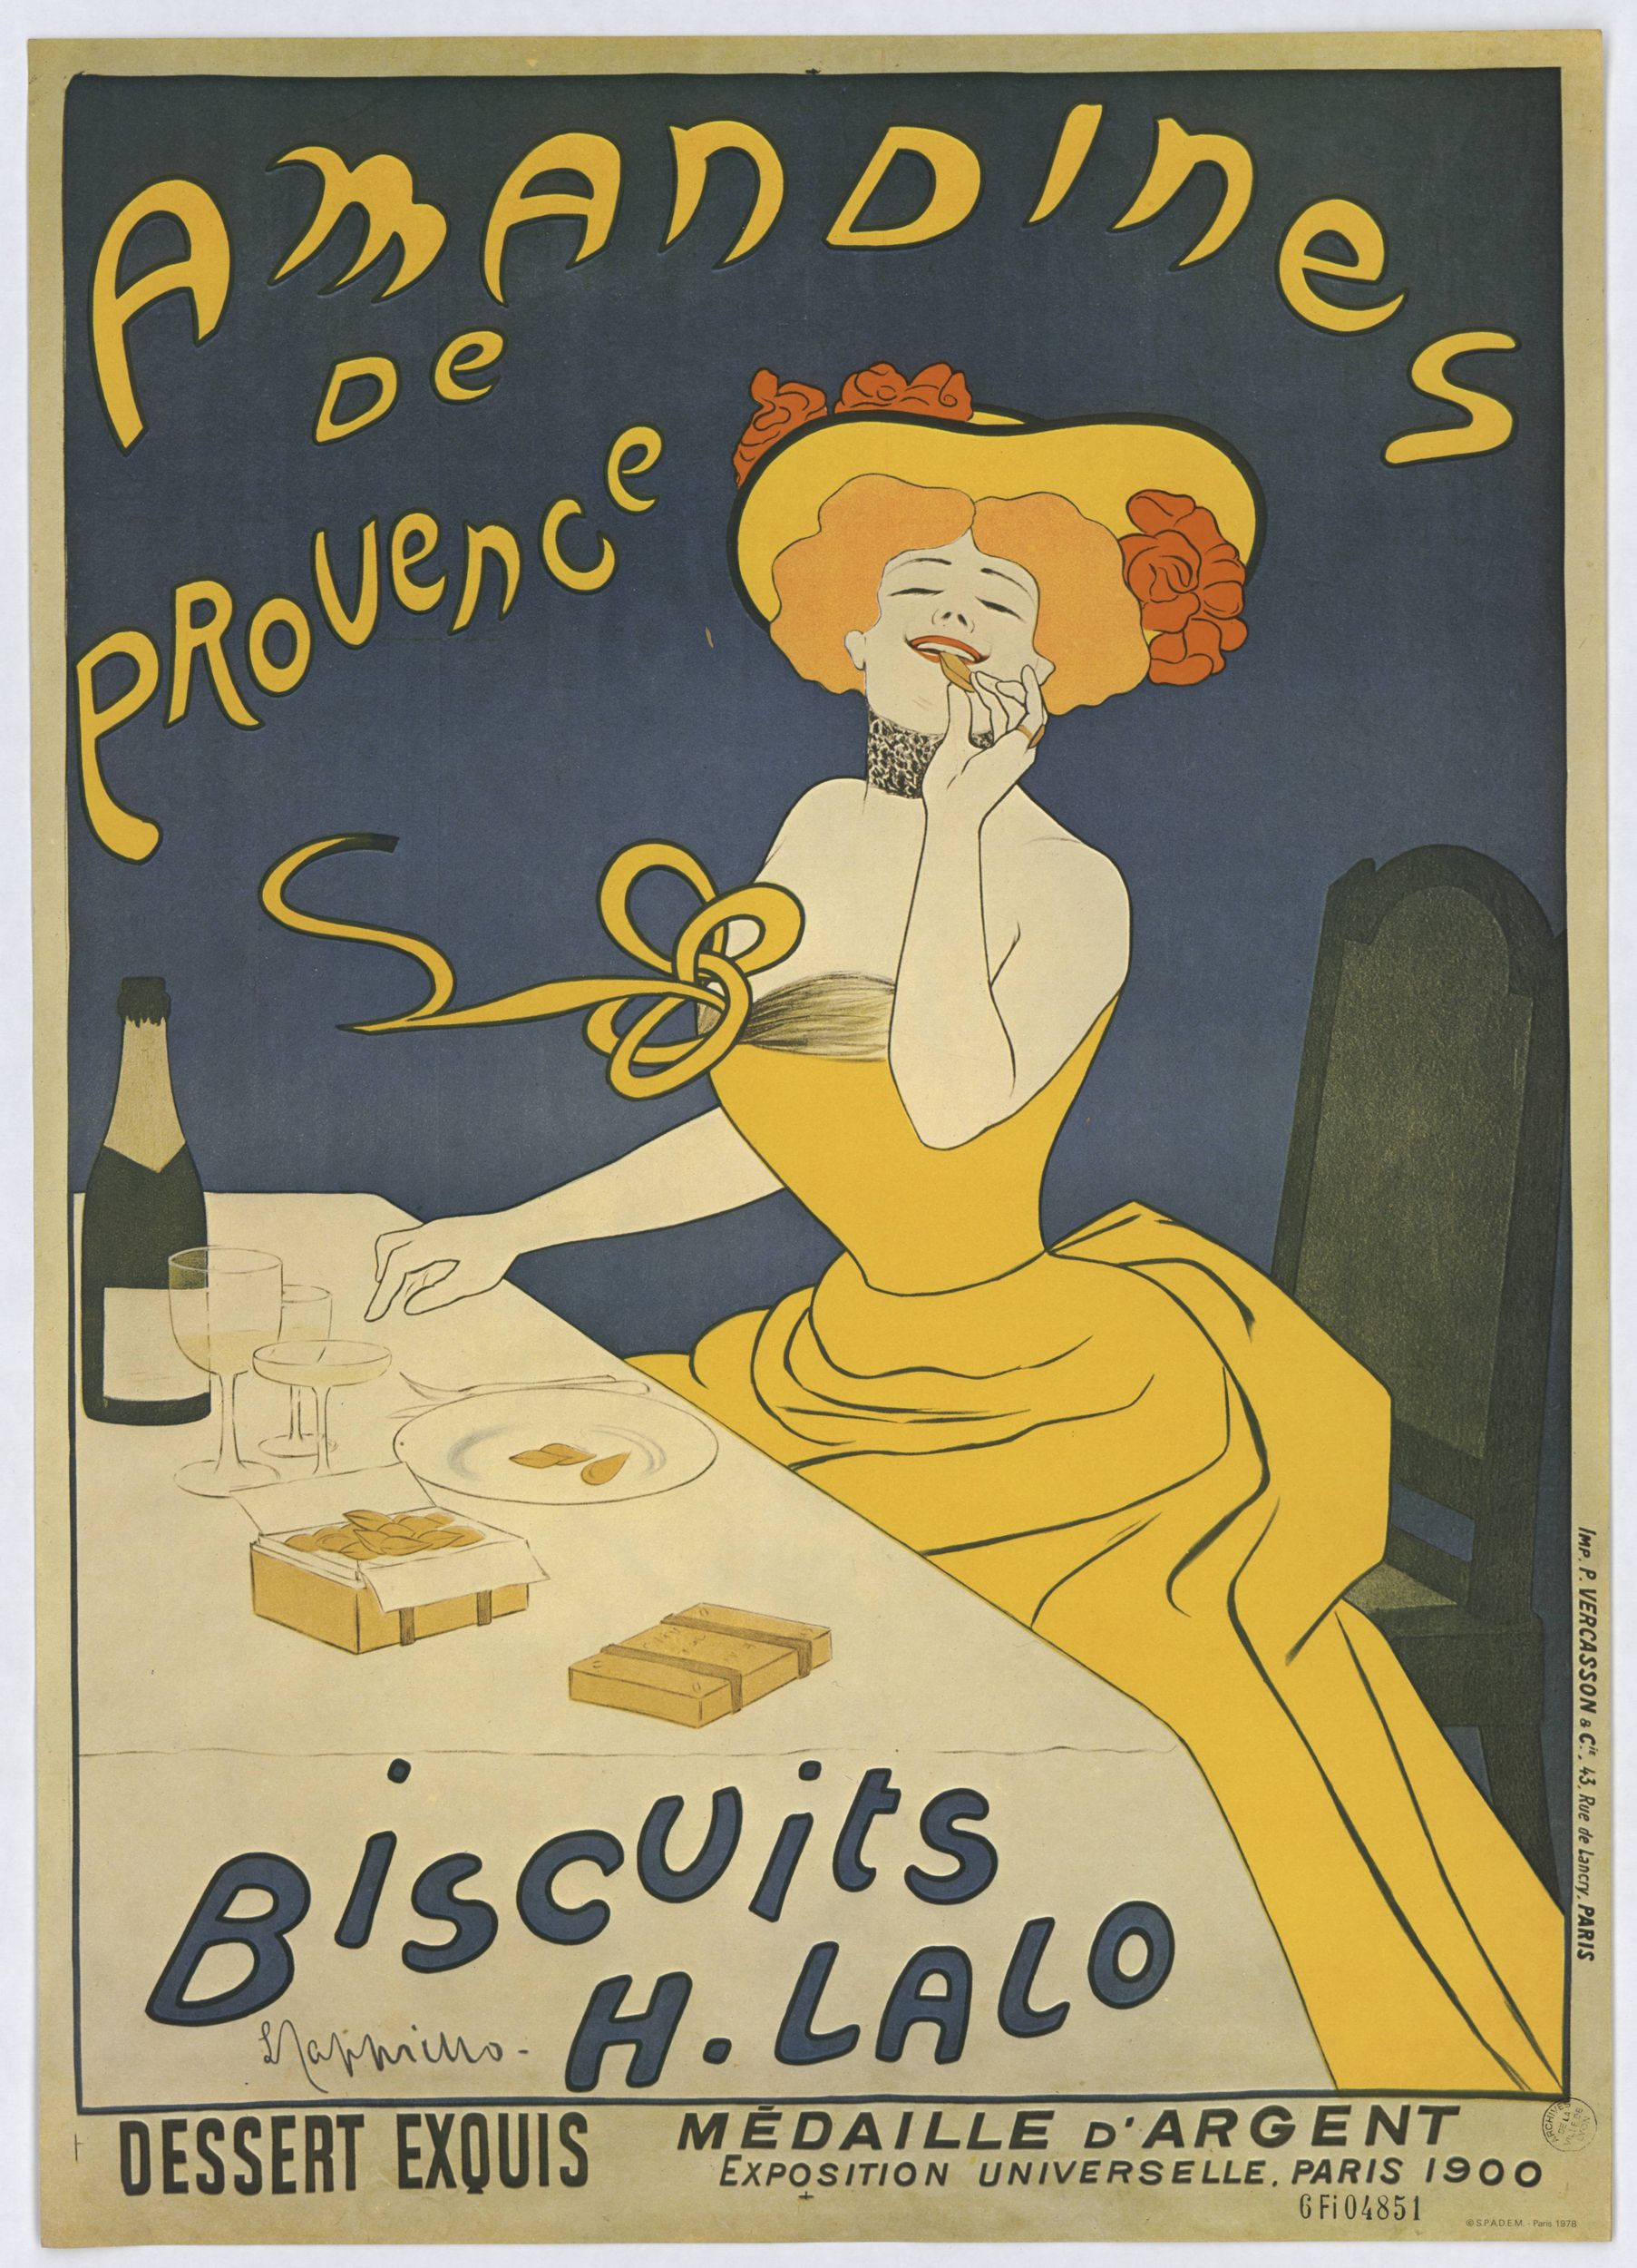 Amandines de Provence - Biscuits H. Lalo : affiche publicitaire couleur (1900, cote : 6FI/4851)